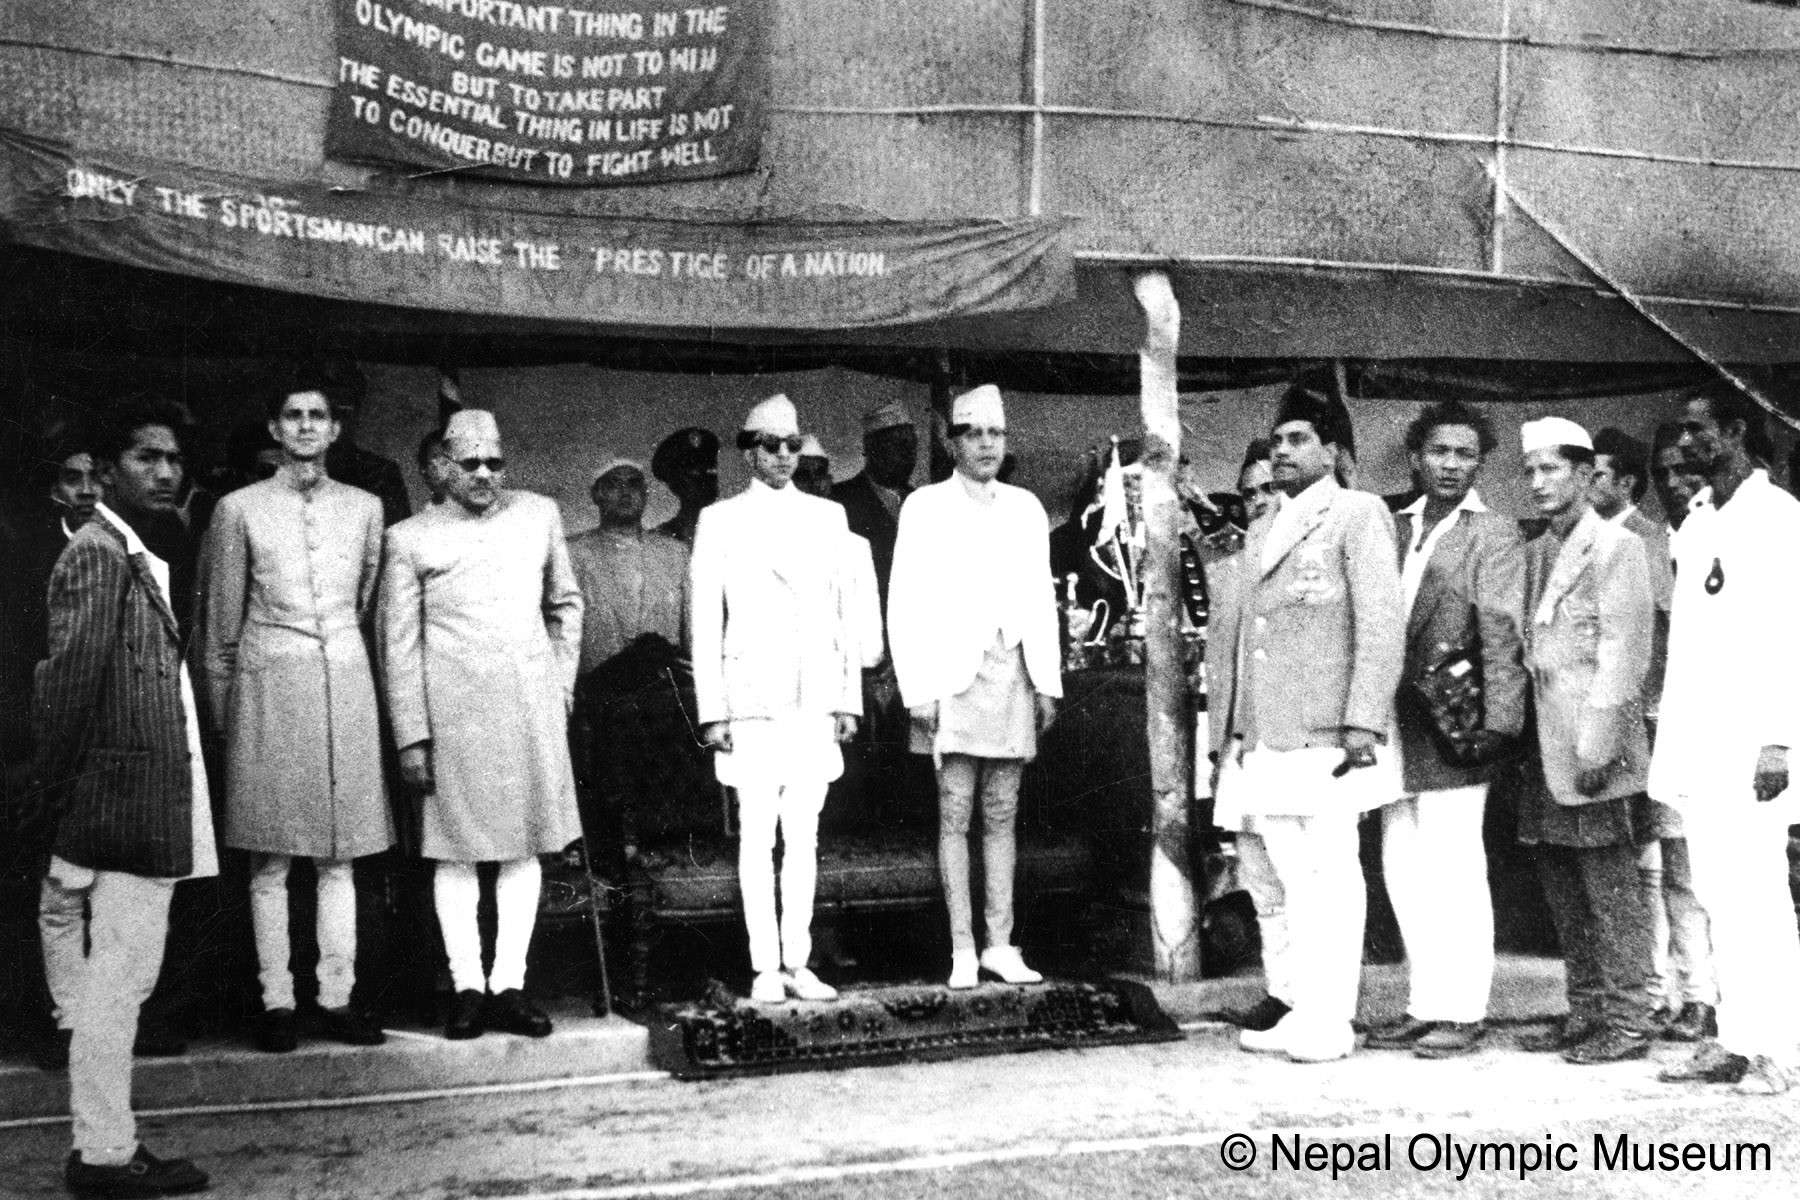 सन् १९५२, हेलसिन्की ओलम्पिकमा पर्यवेक्षकका रूपमा सहभागीको बिदाइ कार्यक्रममा बायाँ-दोस्रोबाट तत्कालीन गृहमन्त्री विपी कोइराला, प्रथम भारतीय राजदूत चण्डेश्वरप्रसाद सिंह, युवराज महेन्द्र, राजा त्रिभुवन, नरशमशेर जबरा र कृष्णबहादुर बर्मा (सेतो टोपी)।